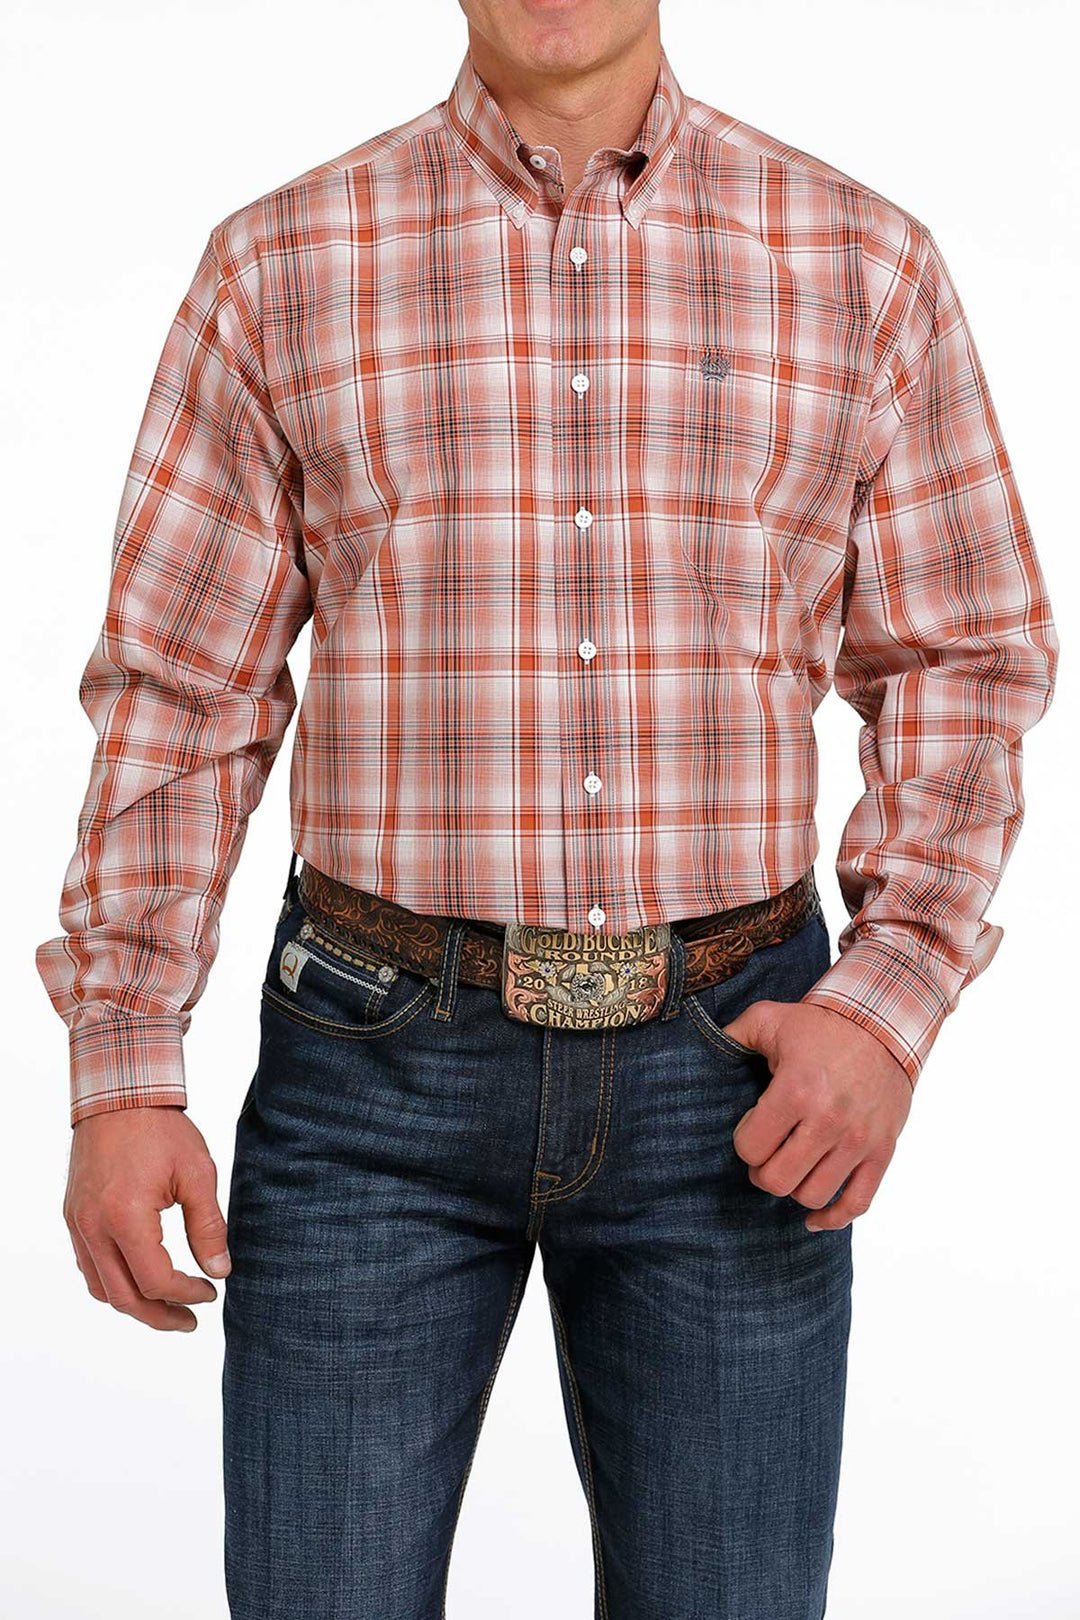 Chemise western boutonnée à carreaux Cinch pour hommes - MTW1105504